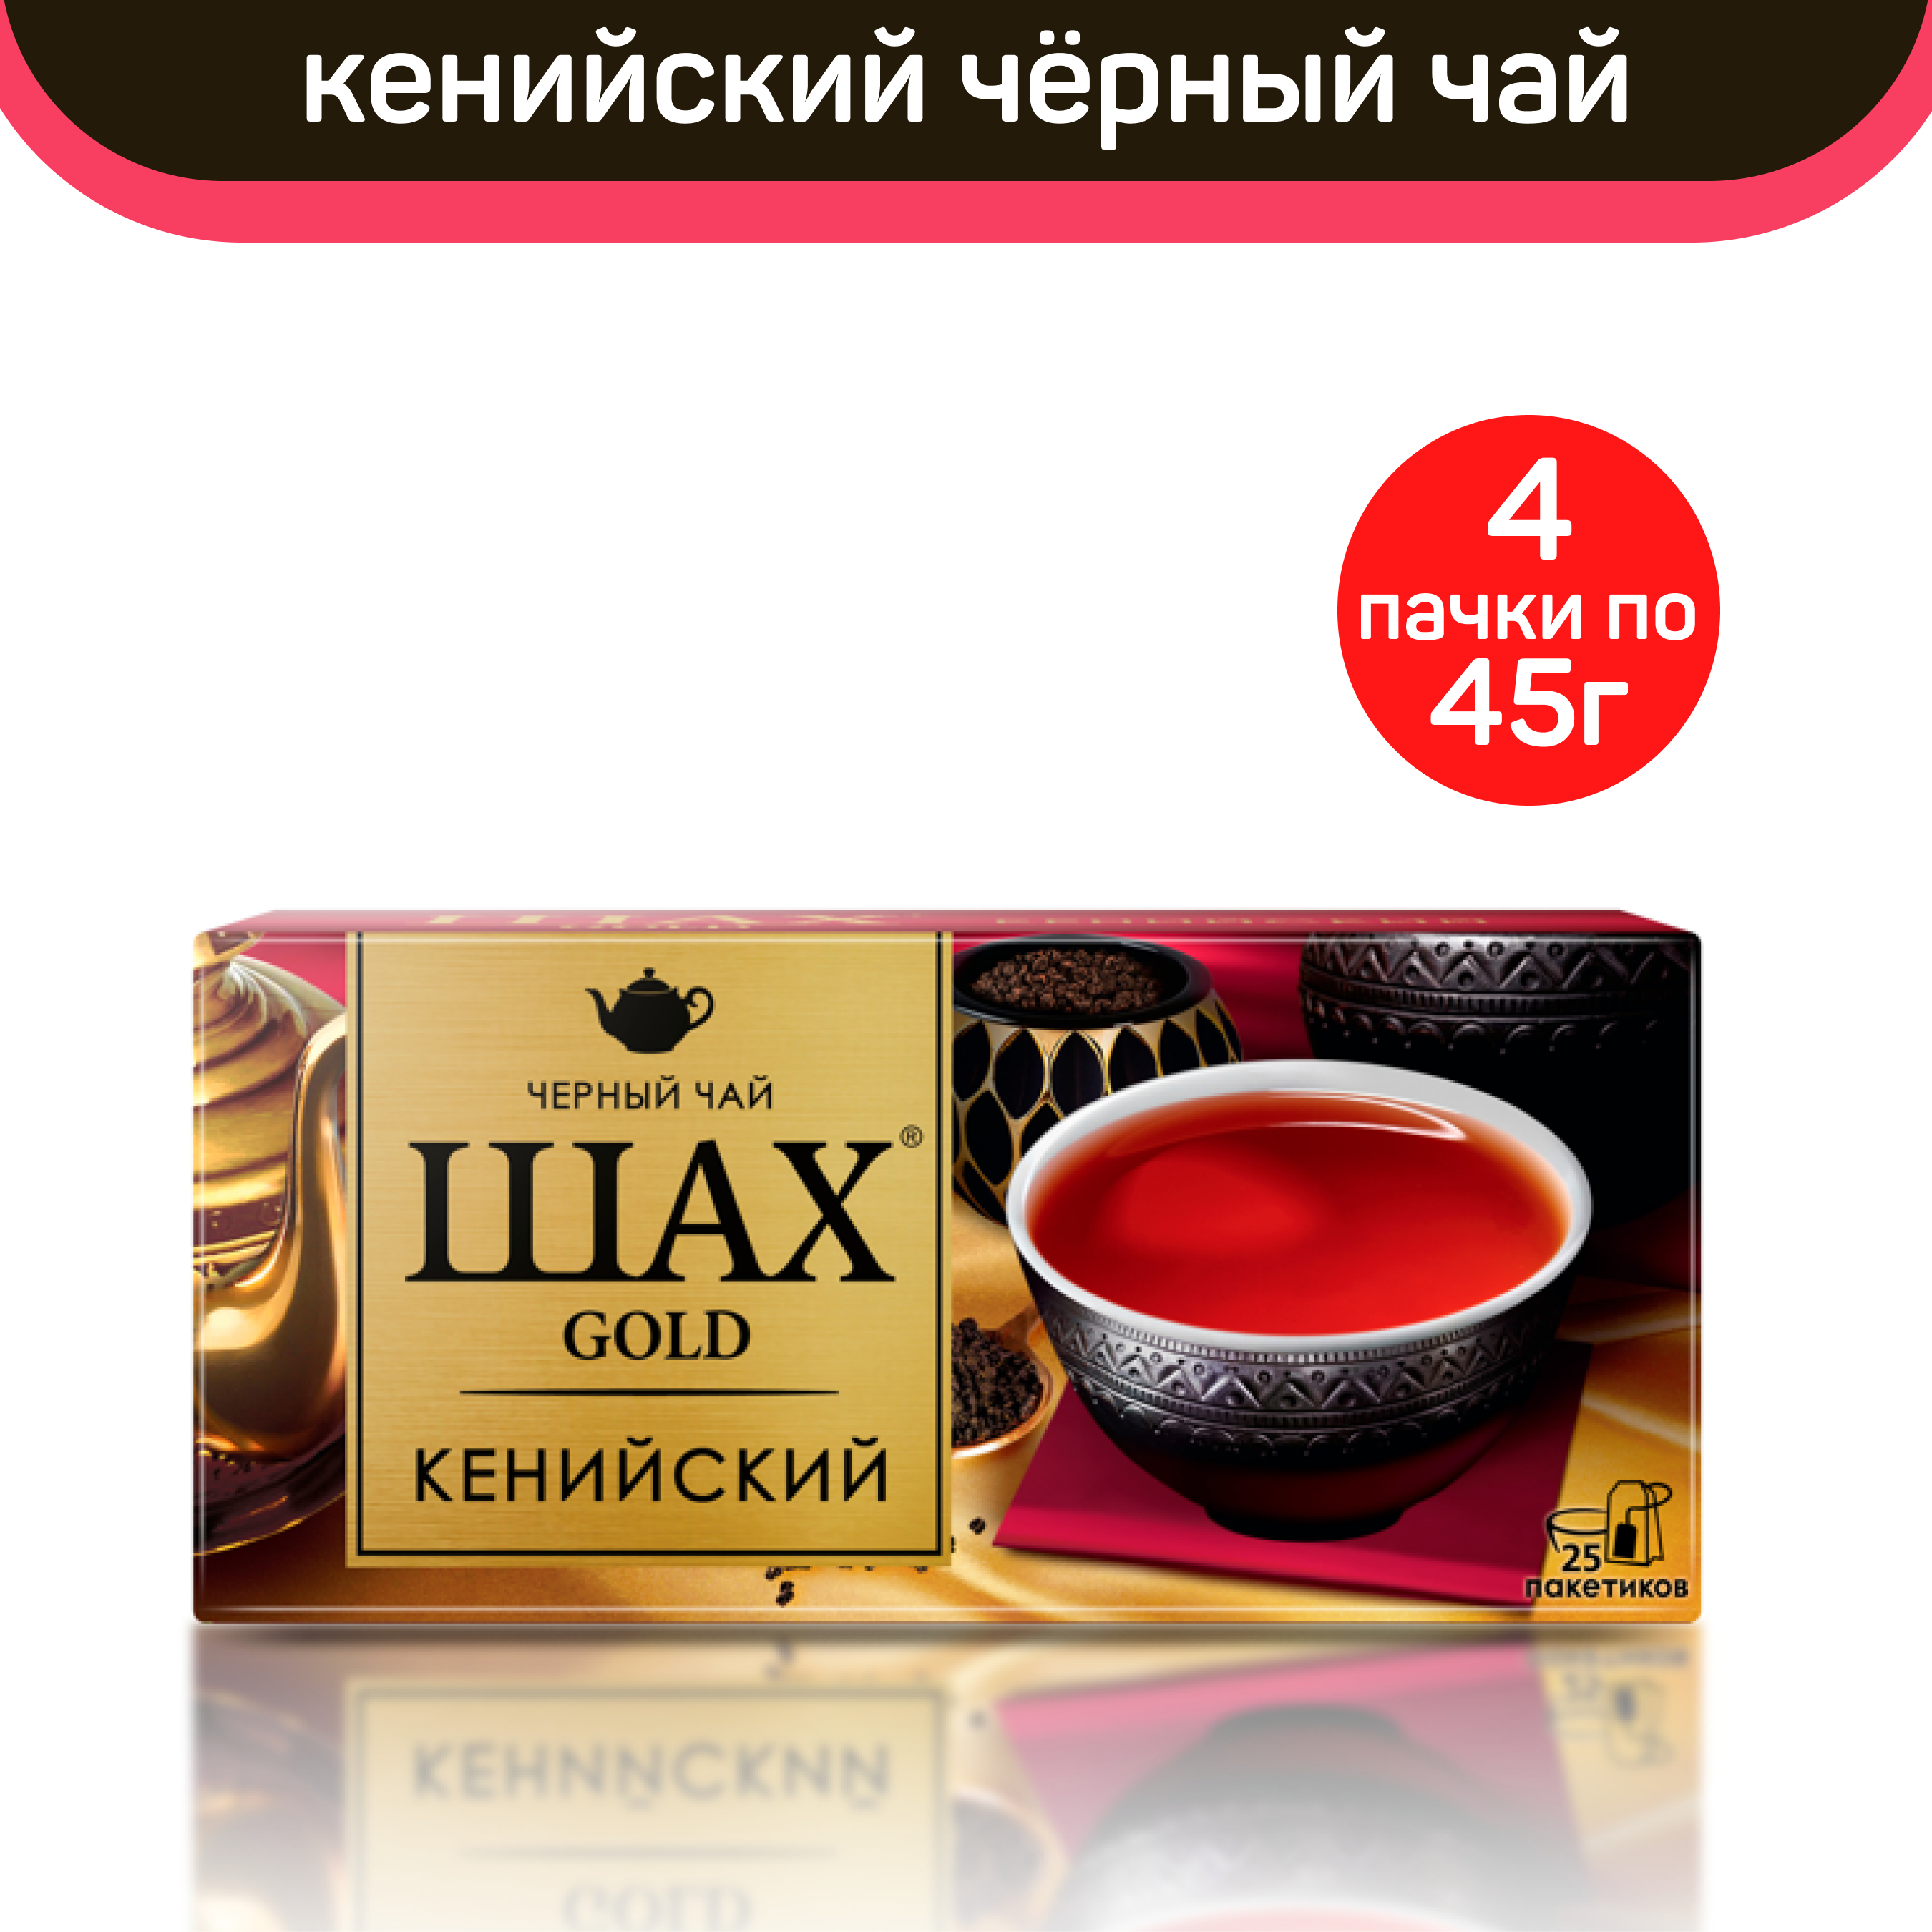 Чай черный Шах Gold, кенийский, 4 шт по 25 пакетиков